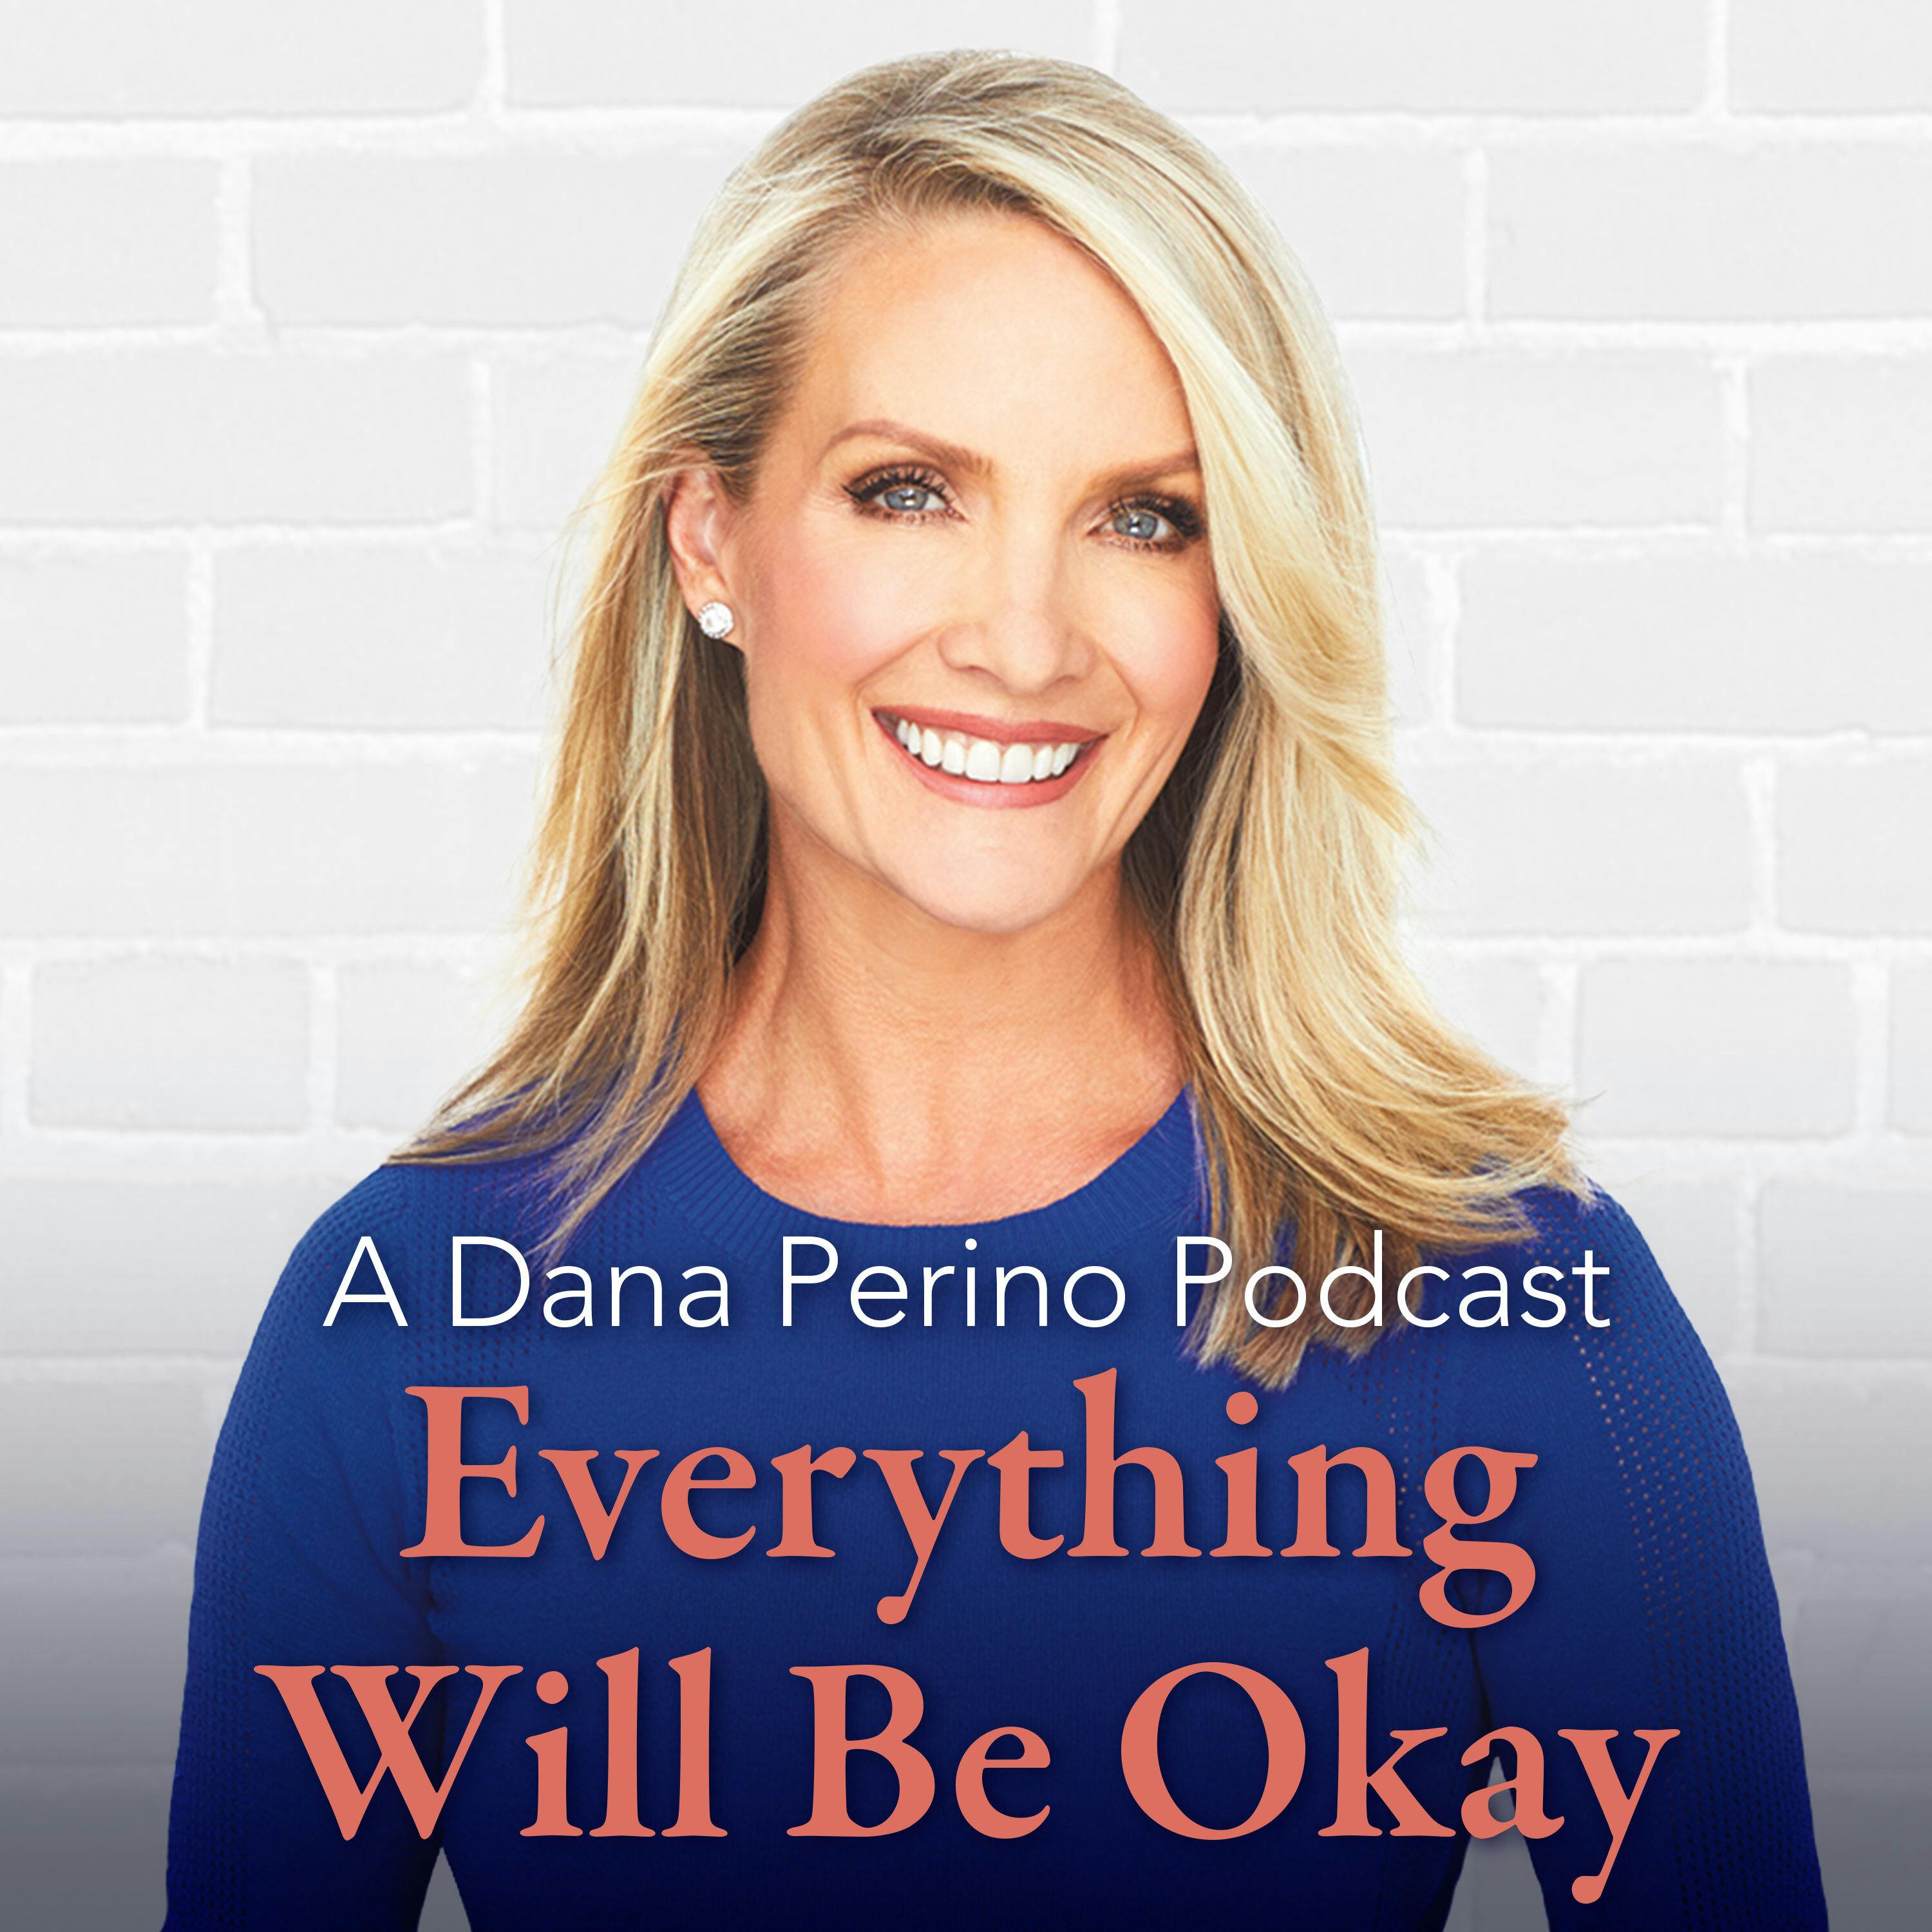 A Dana Perino Podcast: Everything Will Be Okay